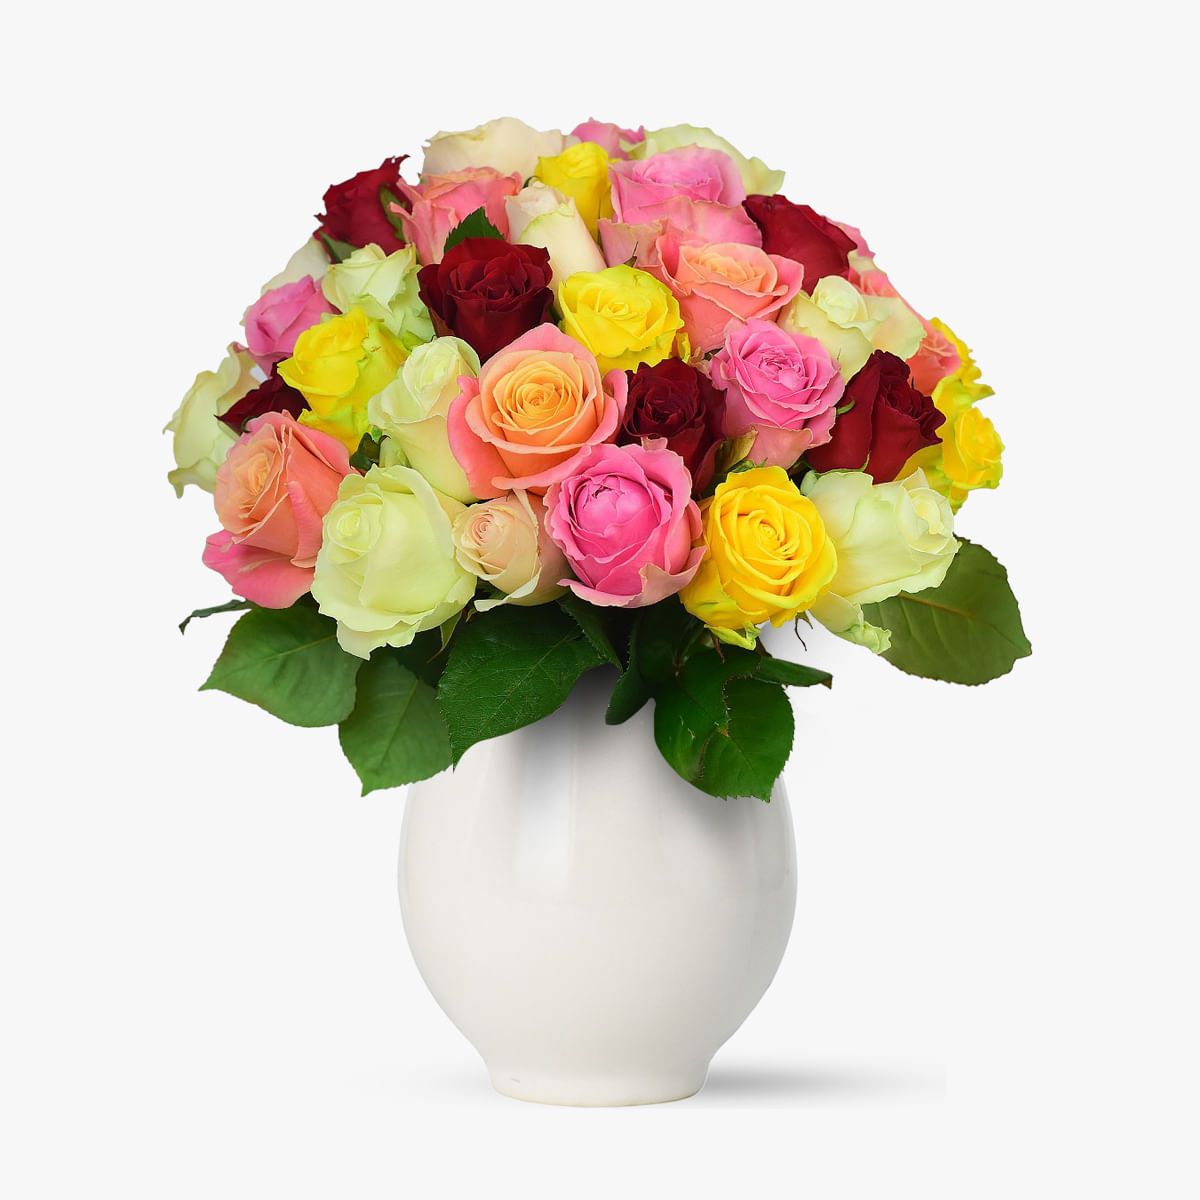 Buchet de 75 trandafiri multicolori – Standard Buchet imagine 2022